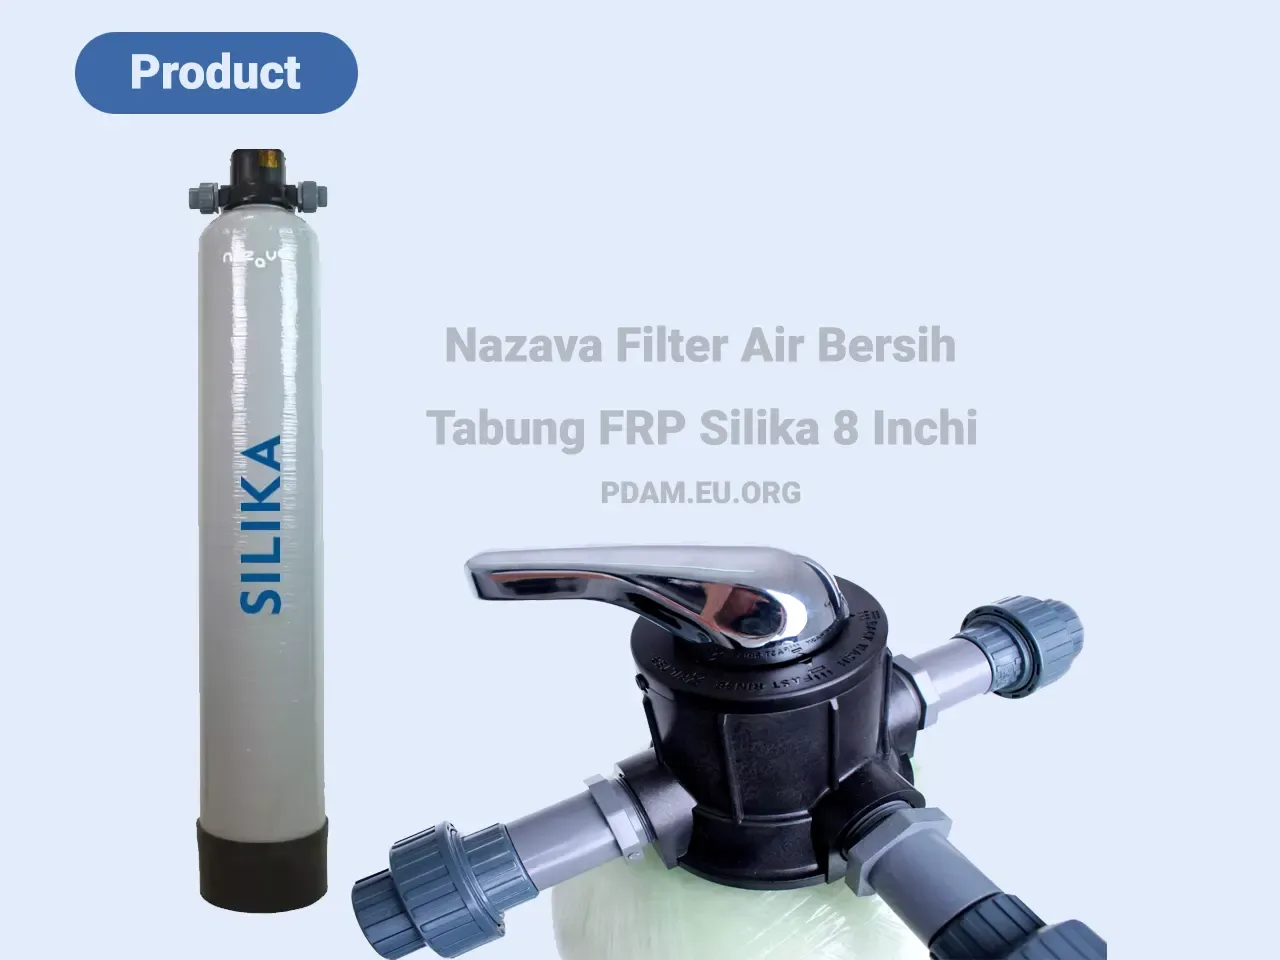 Nazava Filter Air Bersih - Tabung FRP Silika 8